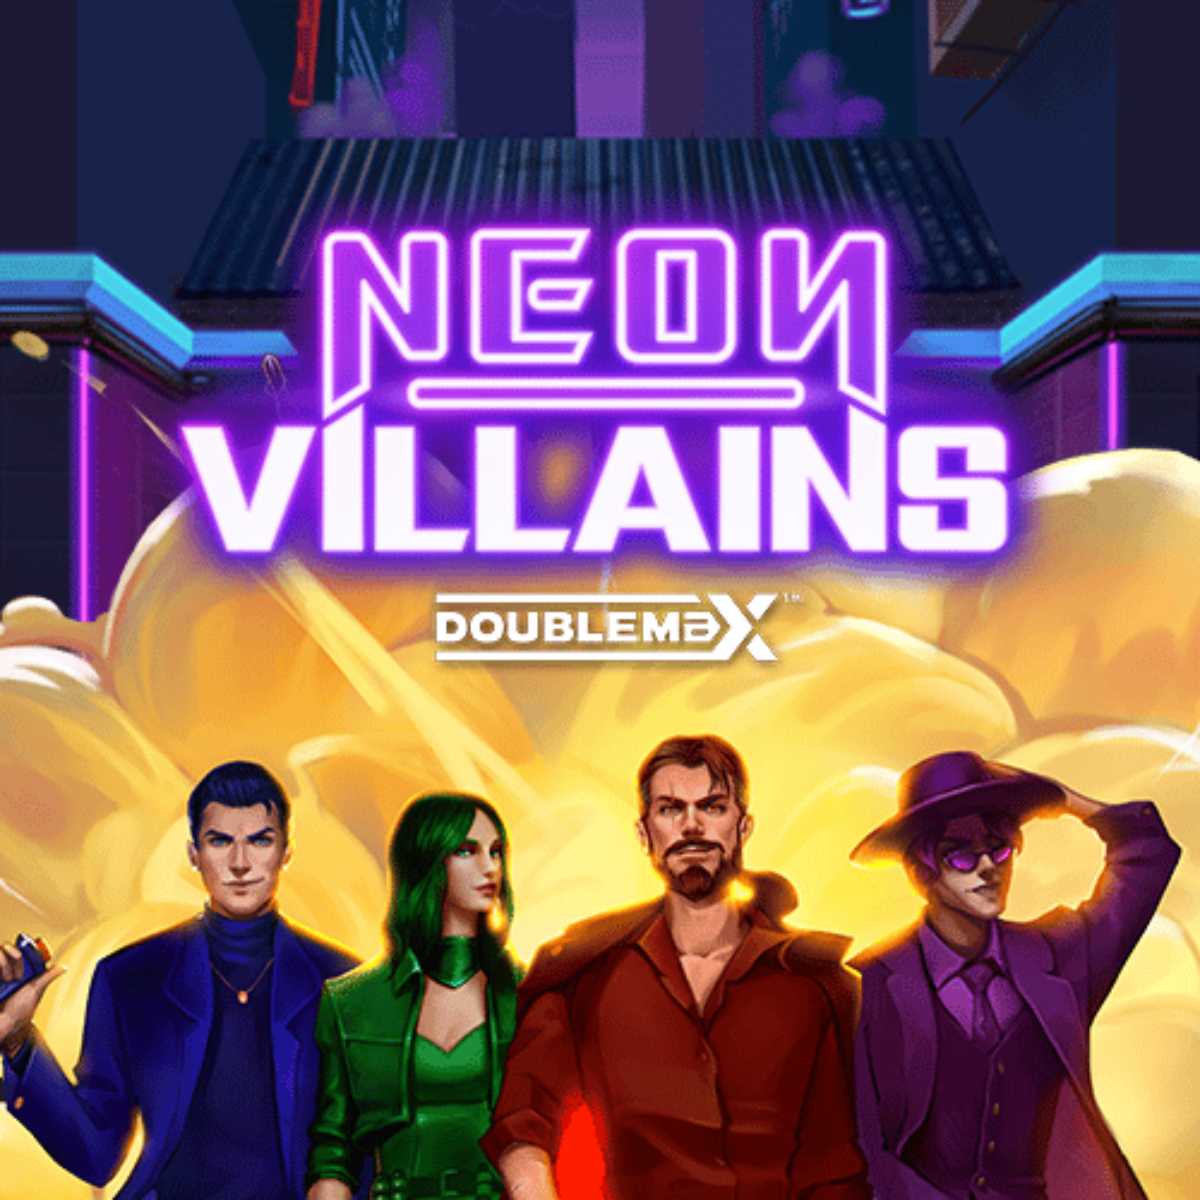 Slot Neon Villains Doublemax